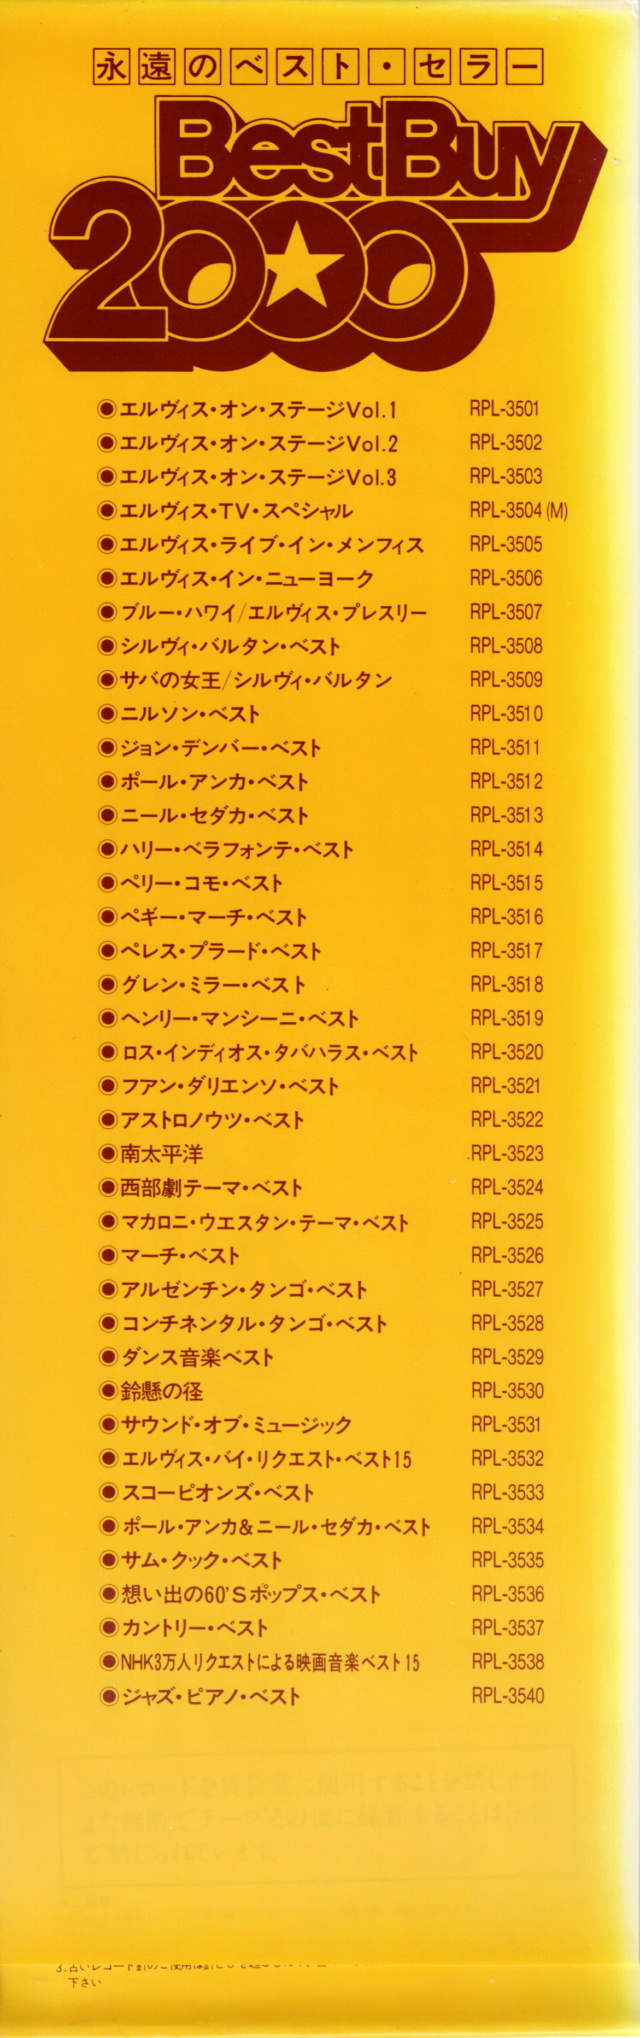 Discographie Japonaise - 4ème partie (33 T COMPILATION) - Page 17 Jpn_rp60